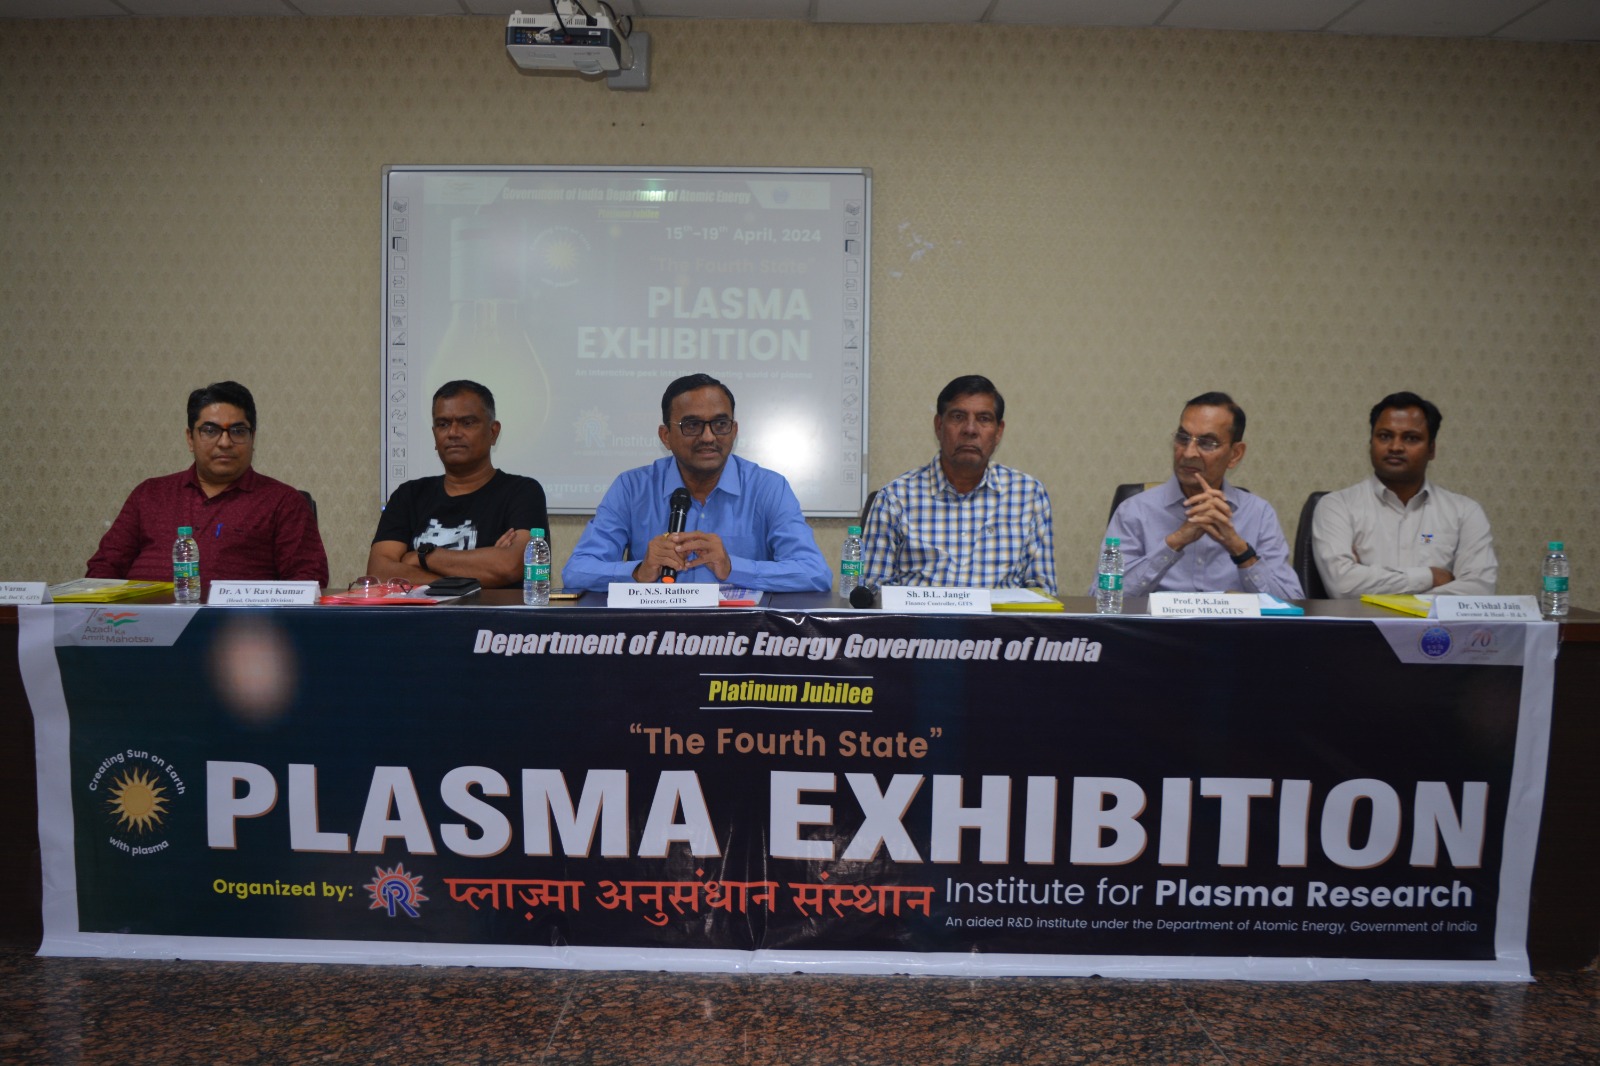 युवाओं में विज्ञान के प्रति रूचि एवं नवाचार बढाने हेतु 05 दिवसीय प्लाज्मा प्रदर्शनी का आयोजन